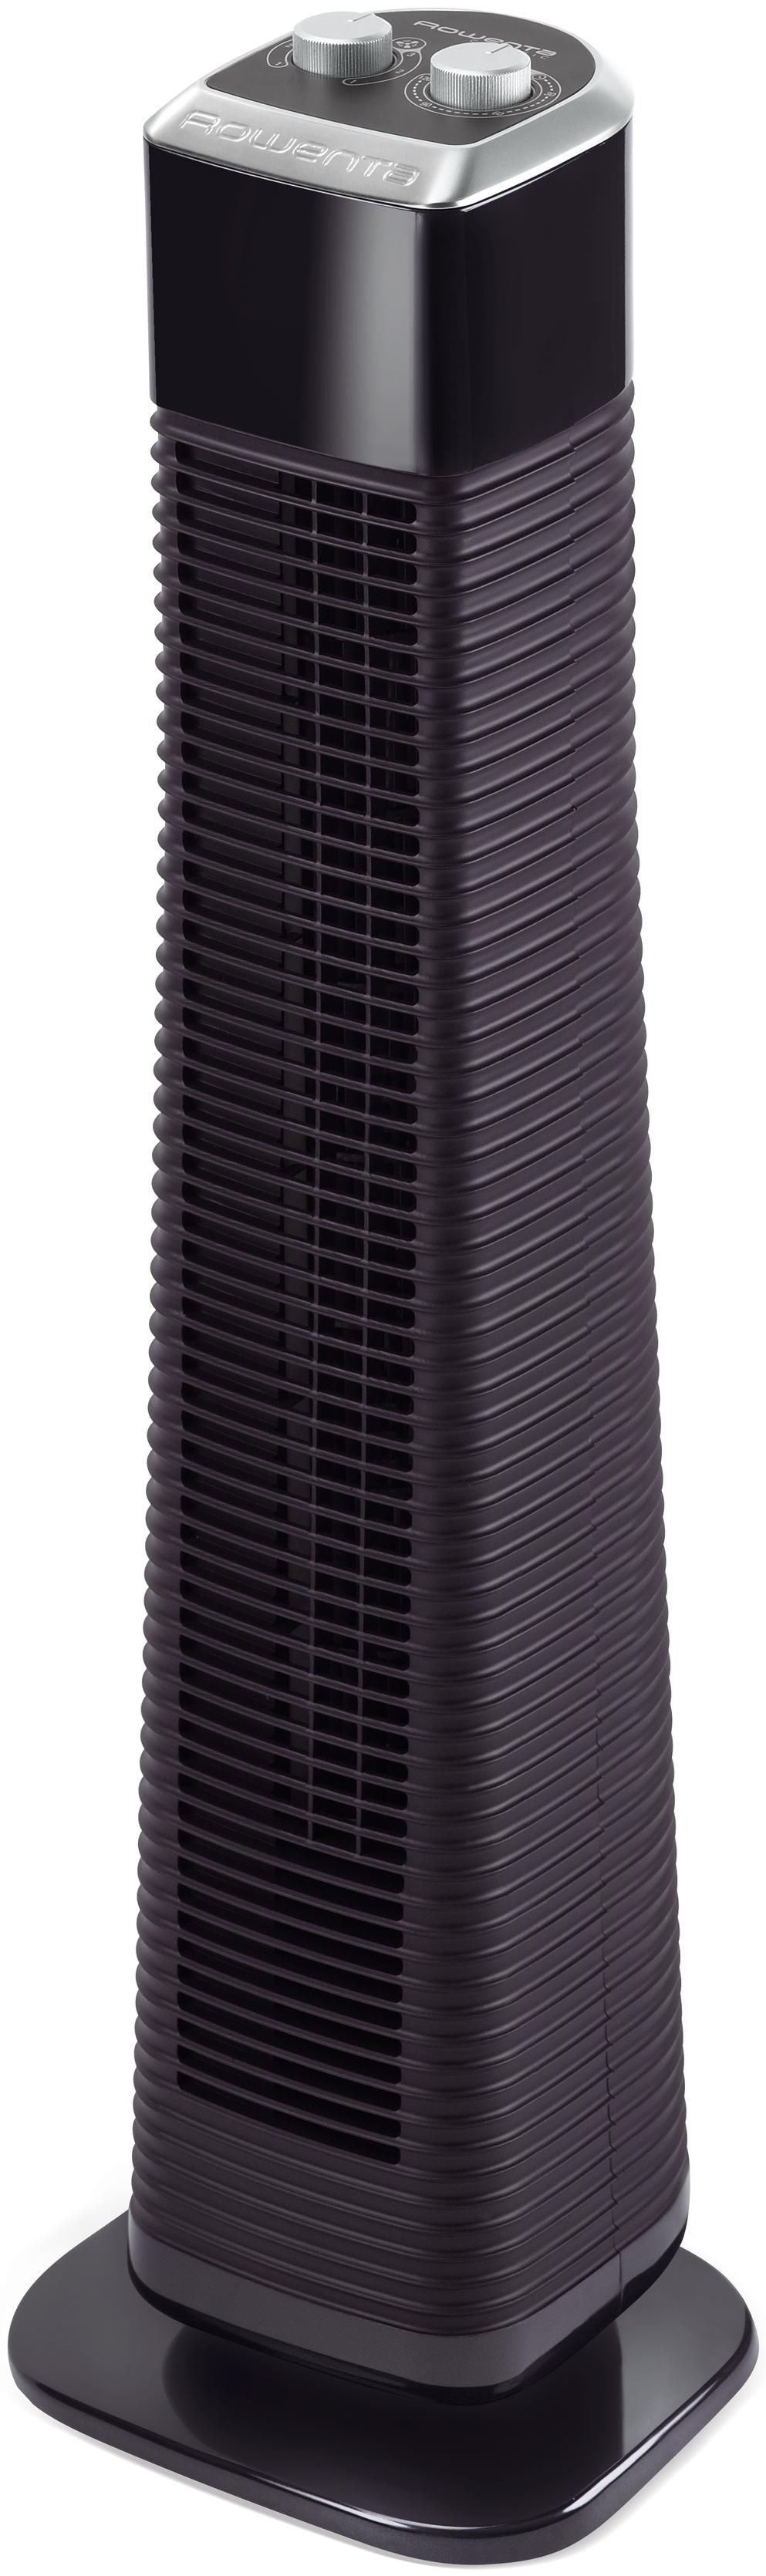 Ventilador de Torre ROWENTA VU6140 (3 velocidades - 50 W)